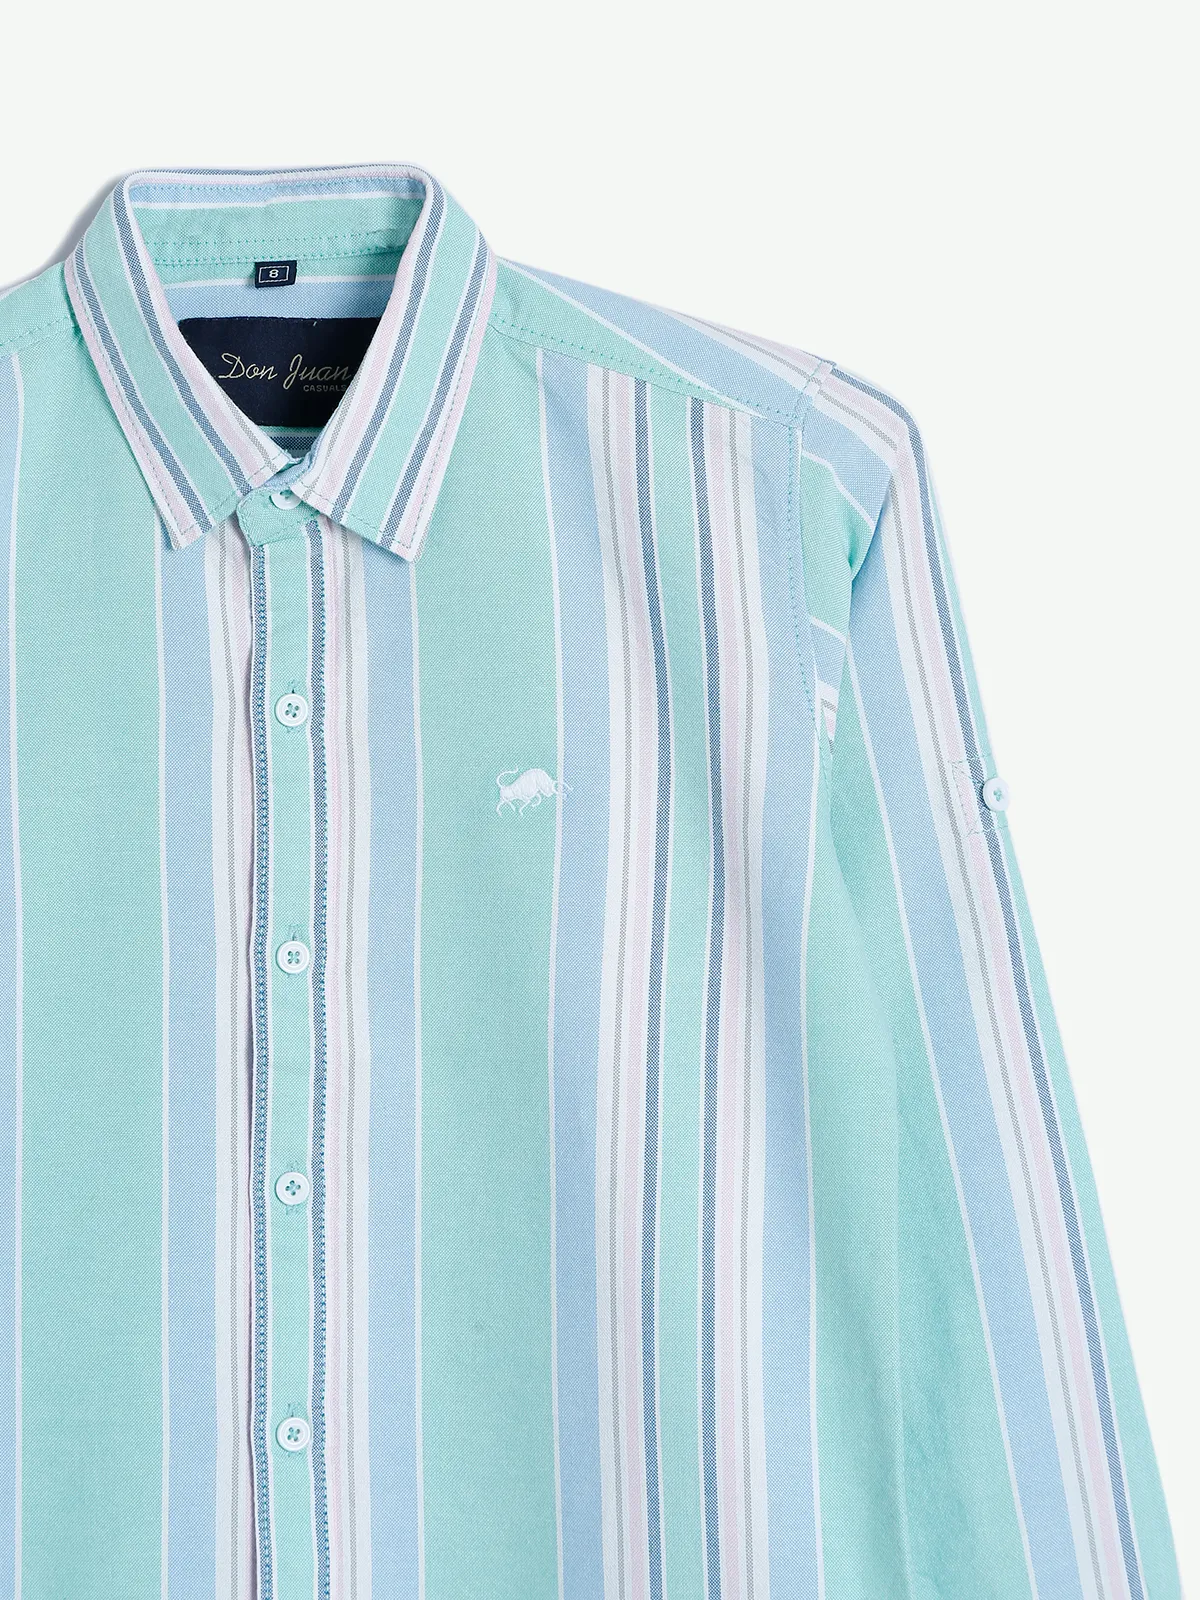 DNJS sea green stripe cotton shirt